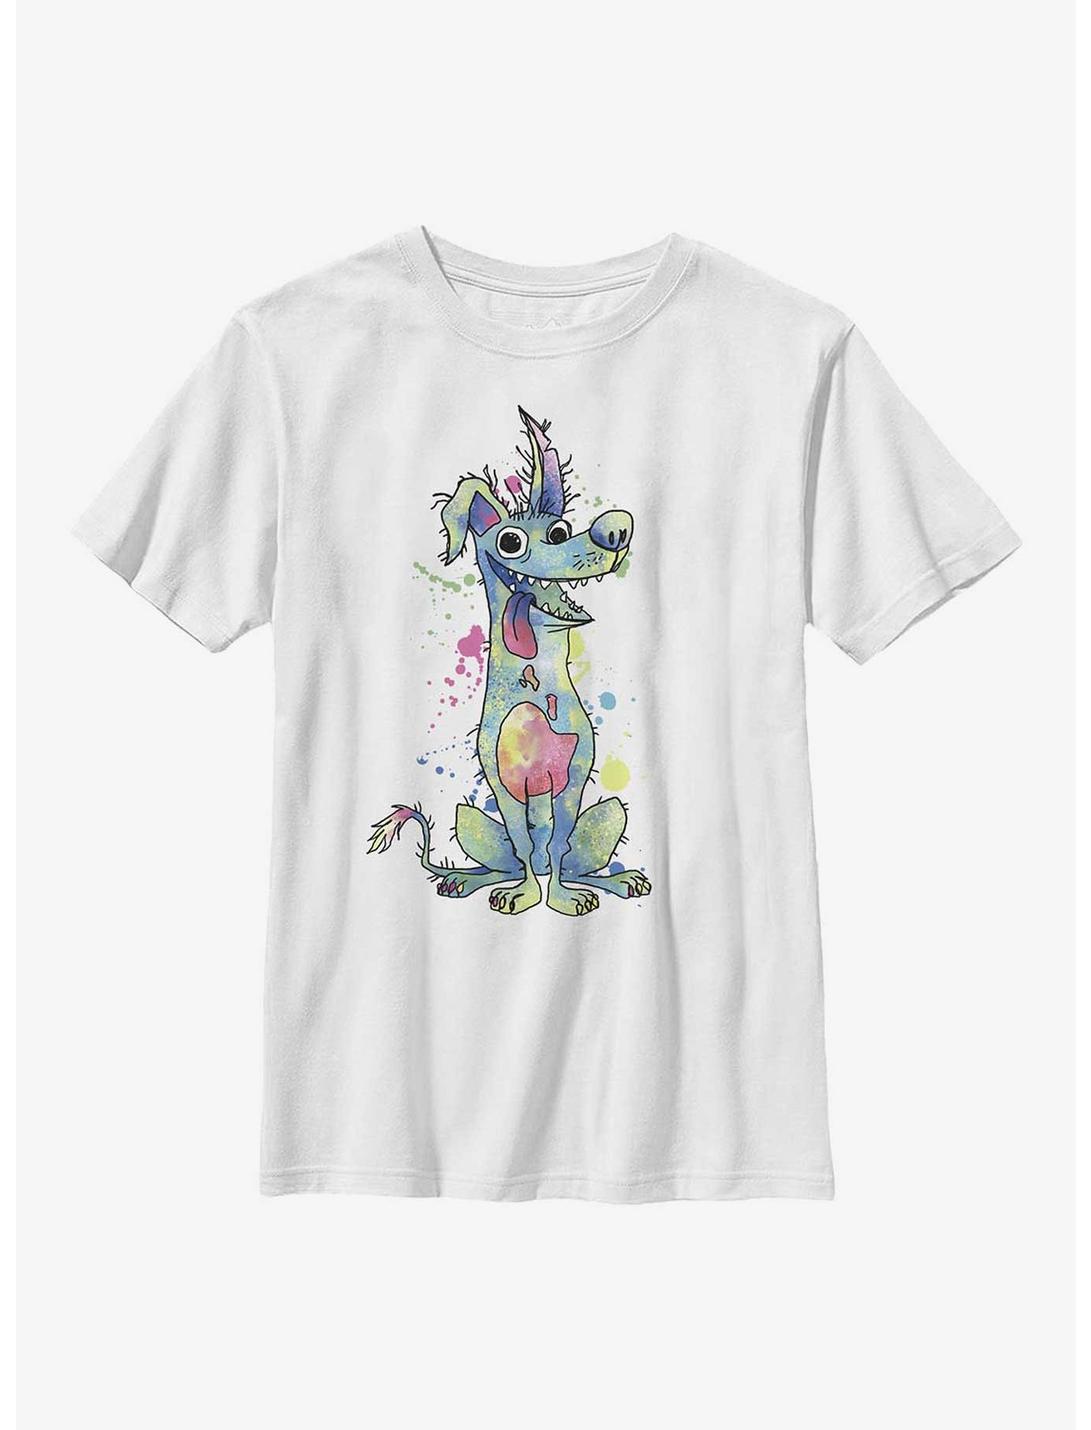 Disney Pixar Coco Watercolor Dante Youth T-Shirt, WHITE, hi-res